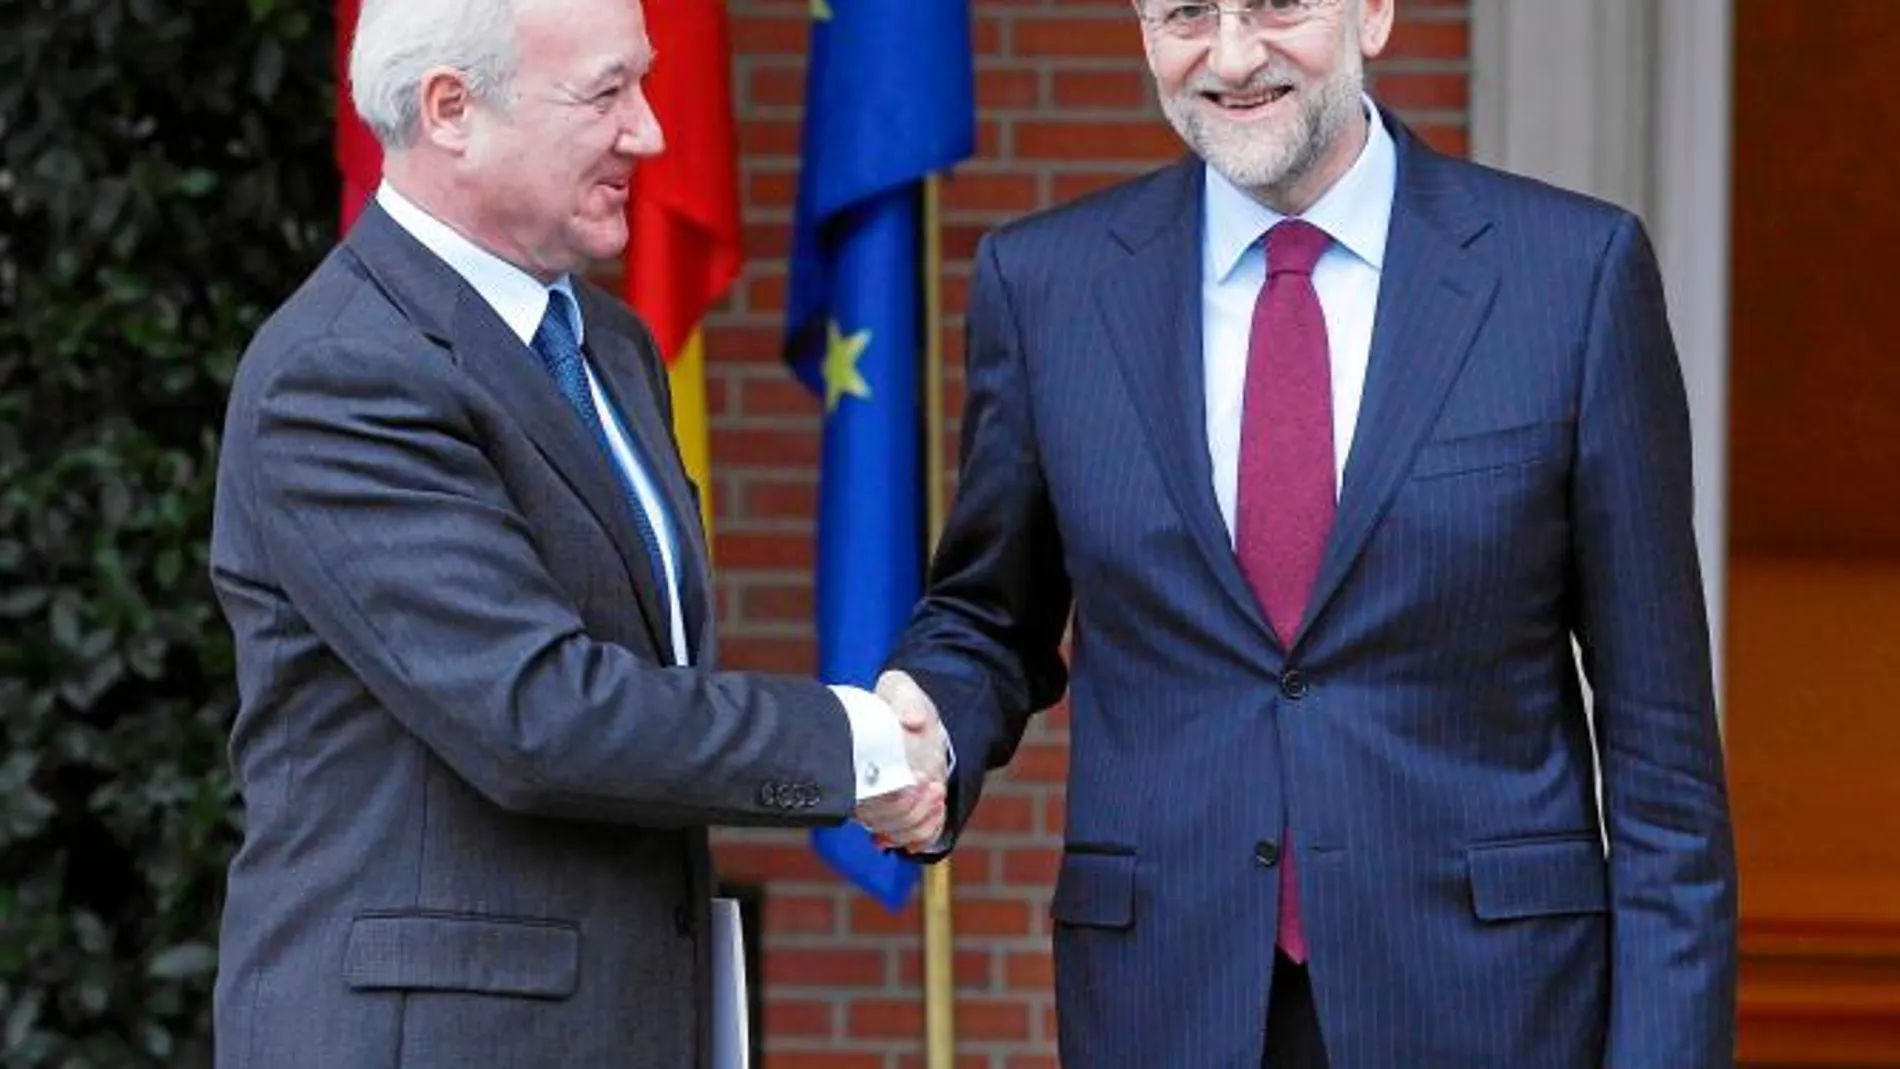 El jefe del Ejecutivo murciano, Ramón Luis Valcárcel, en el primer encuentro que mantuvo con Mariano Rajoy como presidente de España